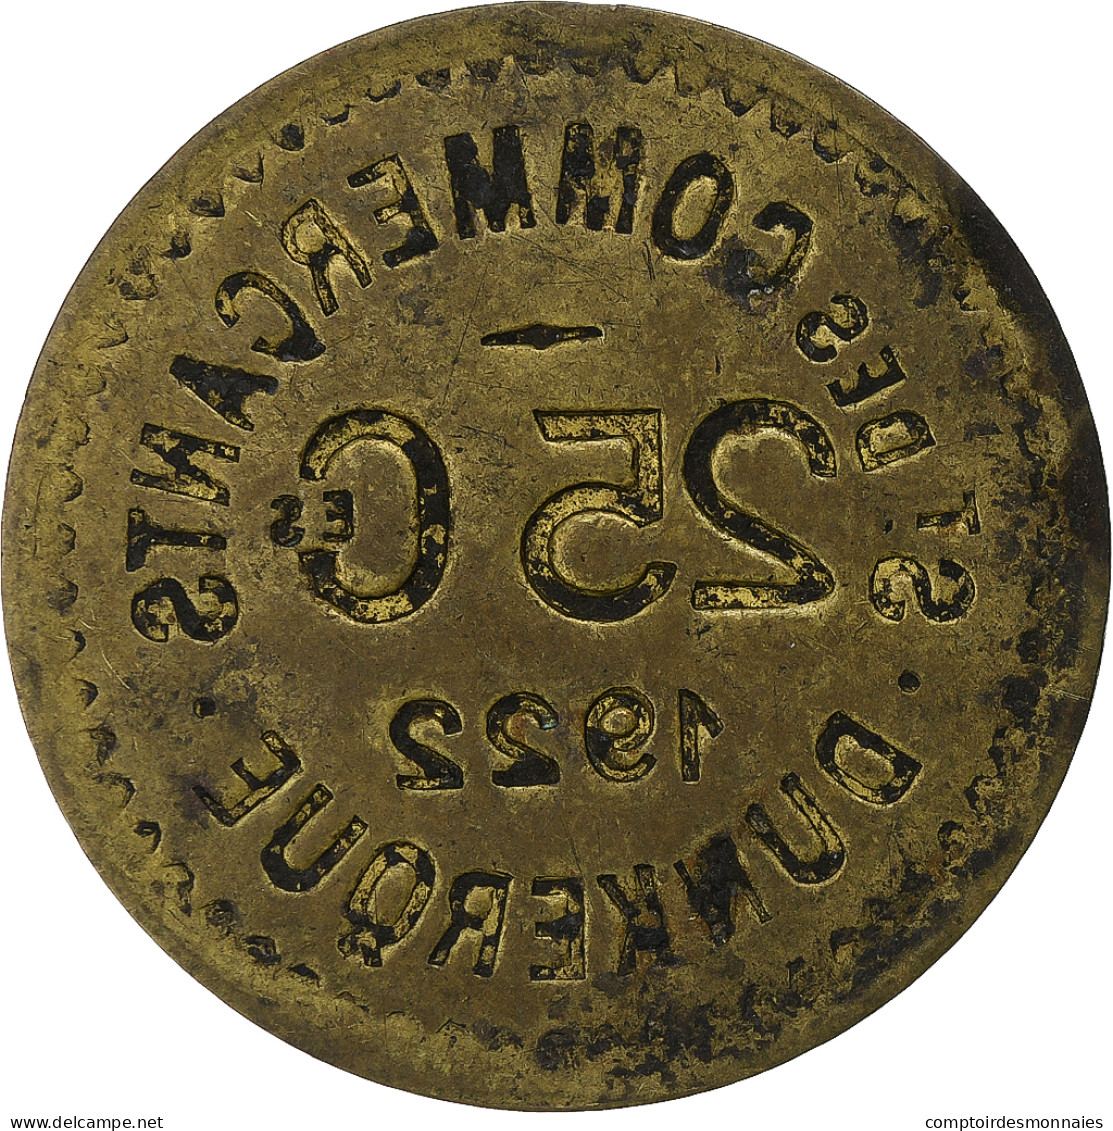 France, Société Des Commerçants - Dunkerque, 25 Centimes, 1922, TTB, Laiton - Monetary / Of Necessity